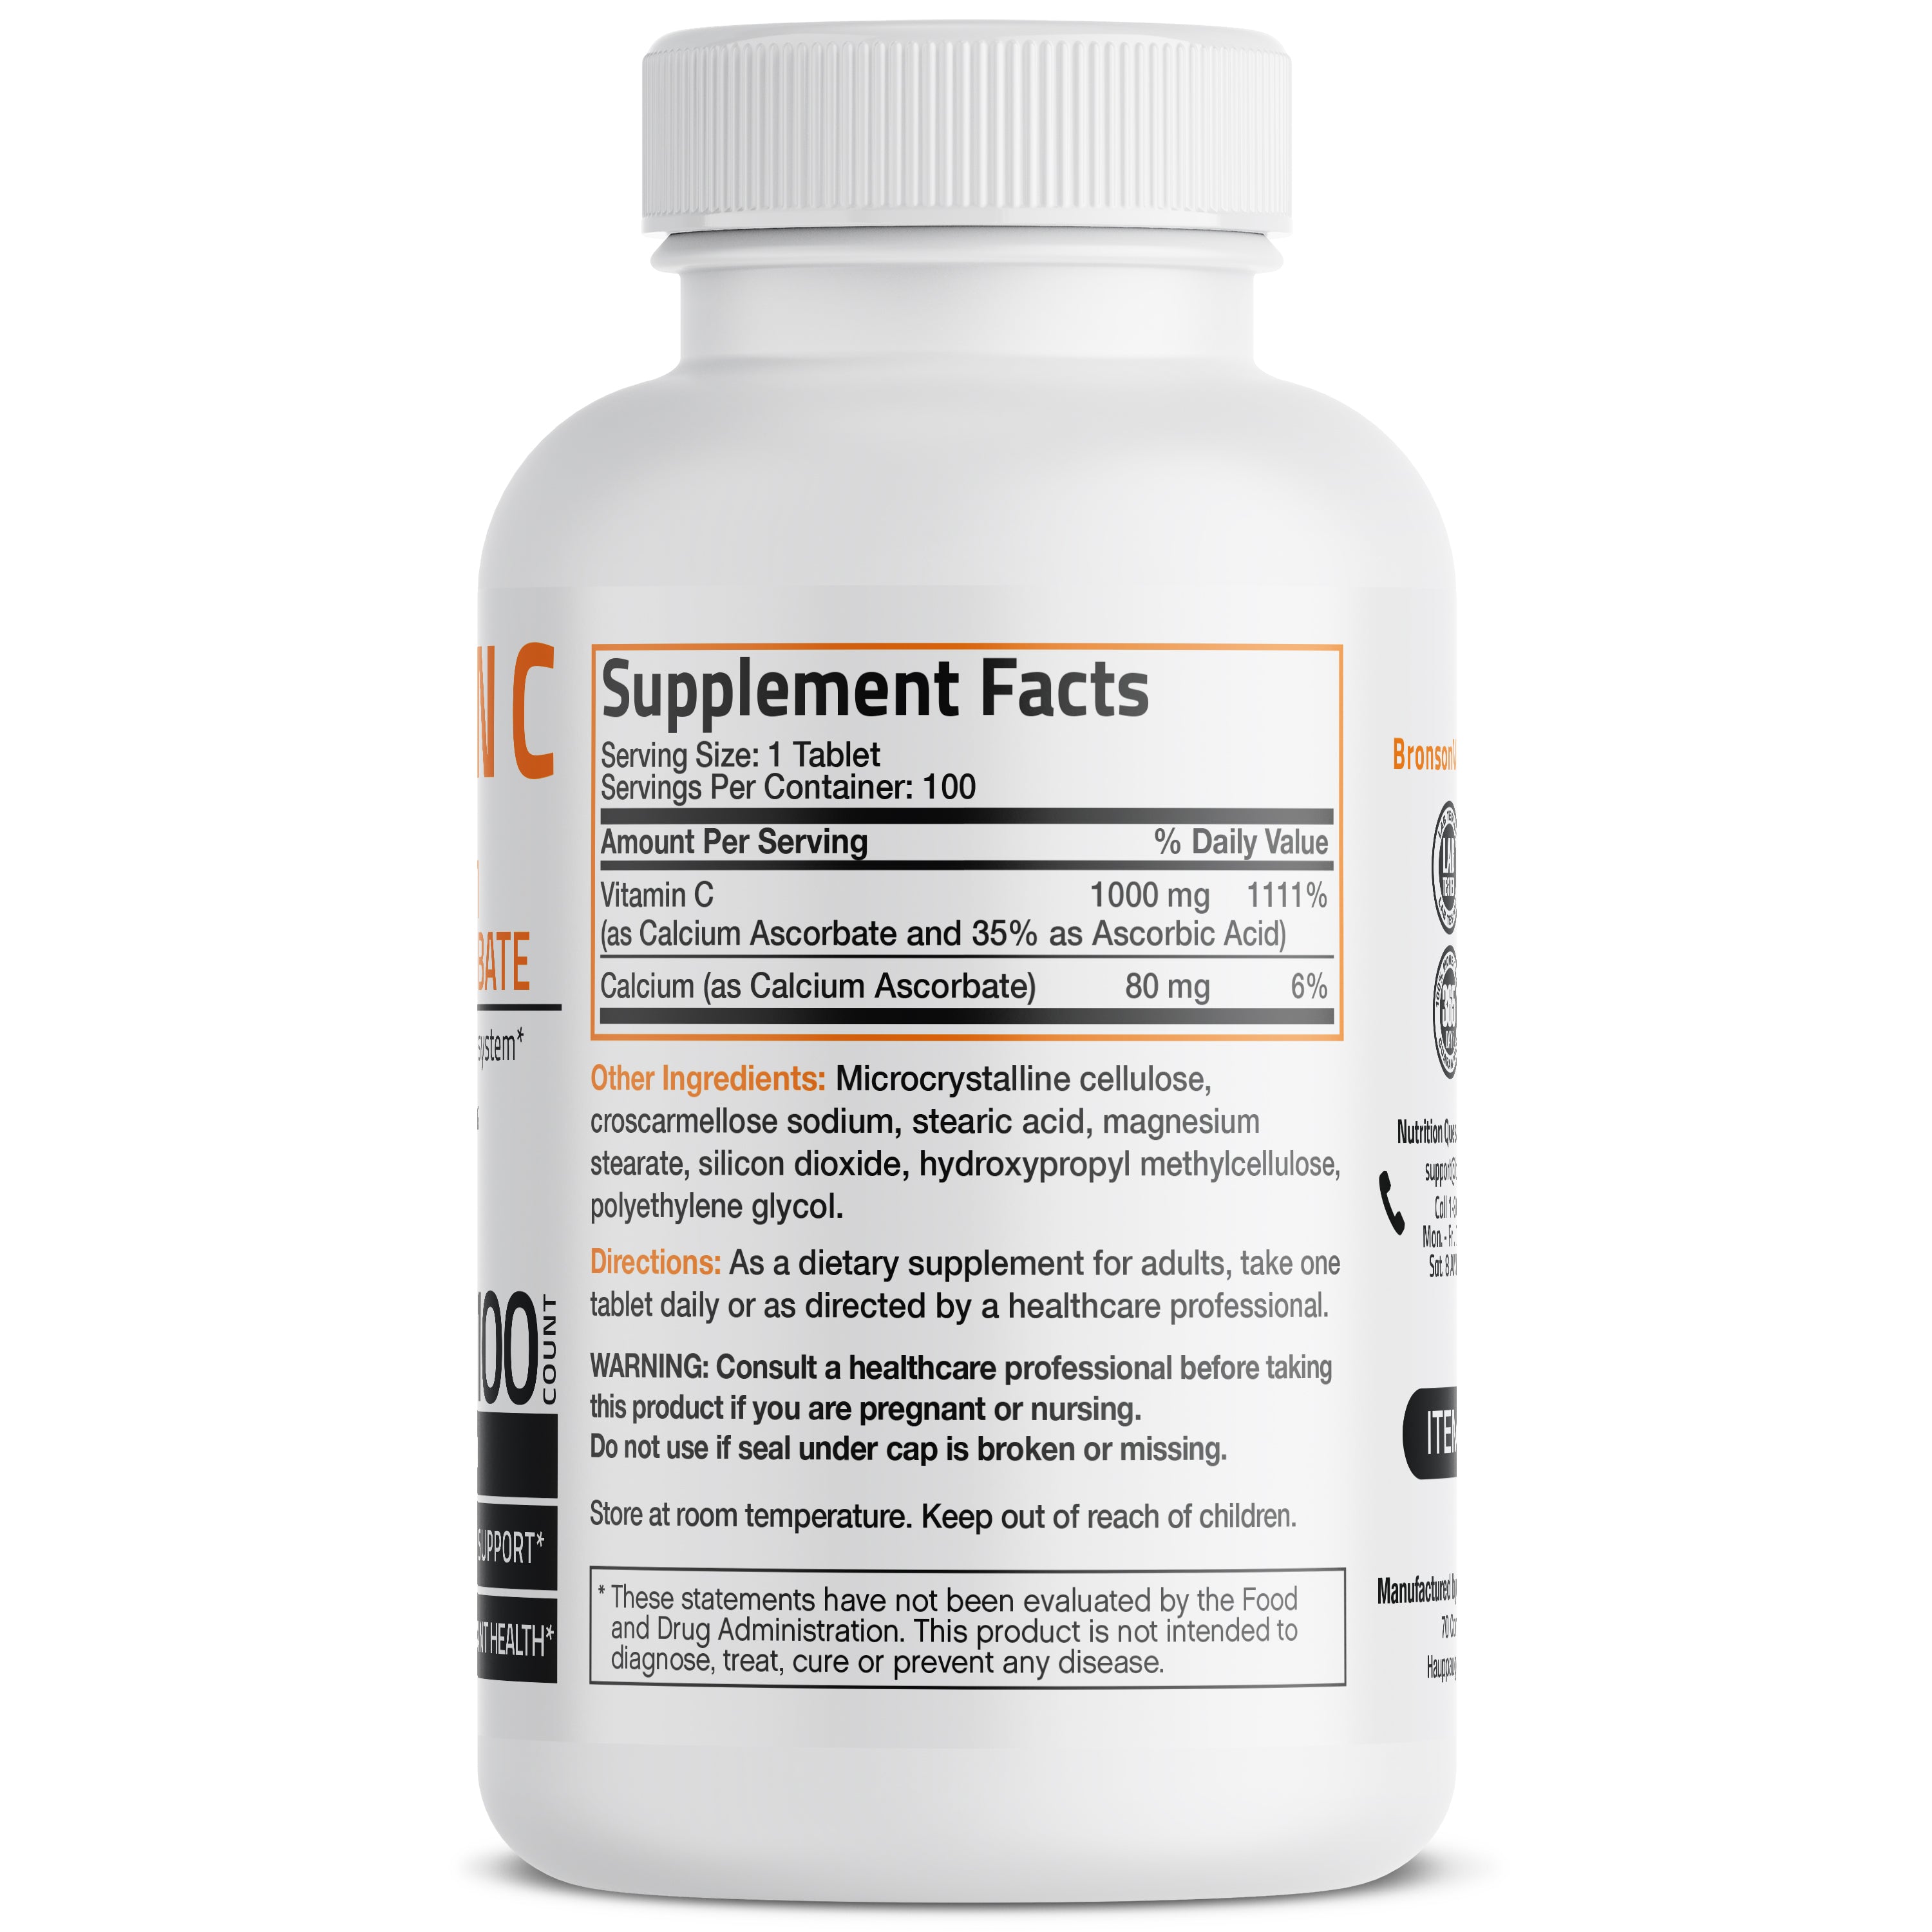 Buffered Vitamin C Calcium Ascorbate - 1,000 mg view 8 of 6